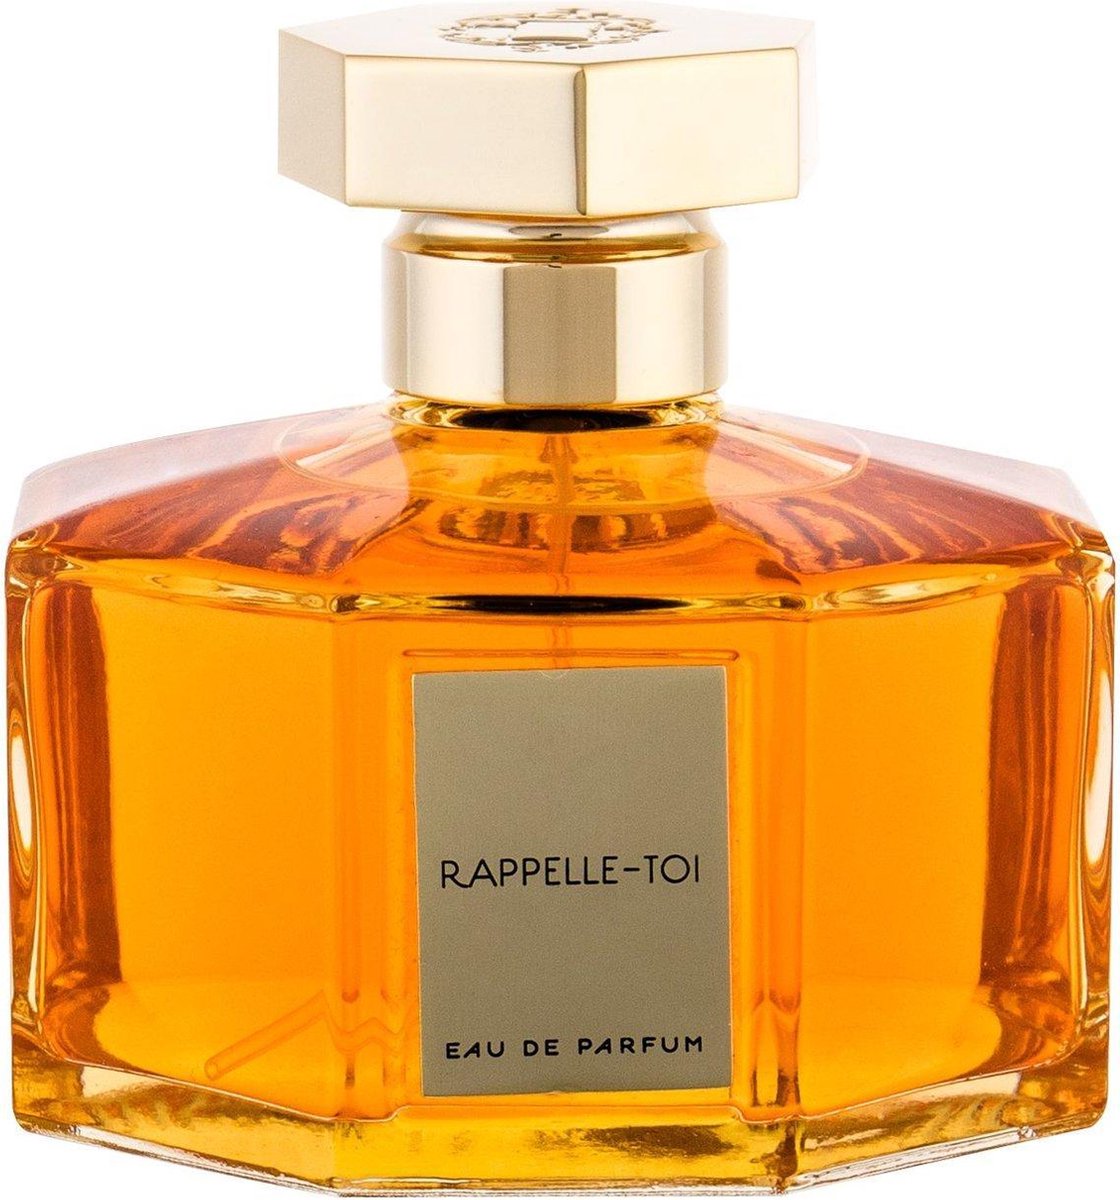 L'Artisan Parfumeur Les Explosions D'Emotions Rappelle-Toi EdP 125ml